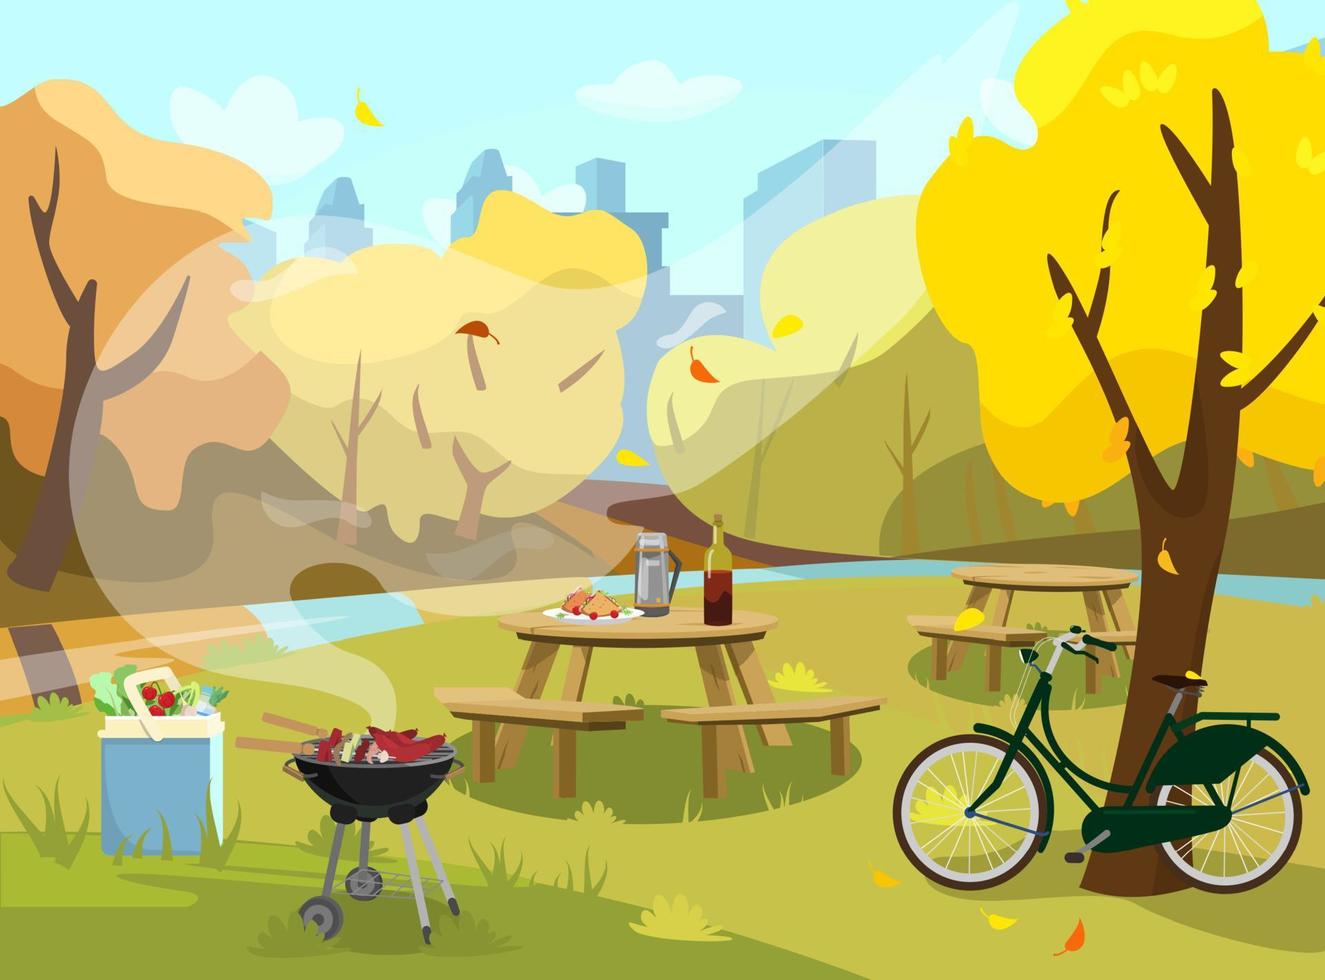 vektor illustration av höstlandskap i parken. picknickbord med smörgåsar, termos och vin. grill med mat och kylväska med produkter. cykel nära träd. stad i bakgrunden. platt stil.